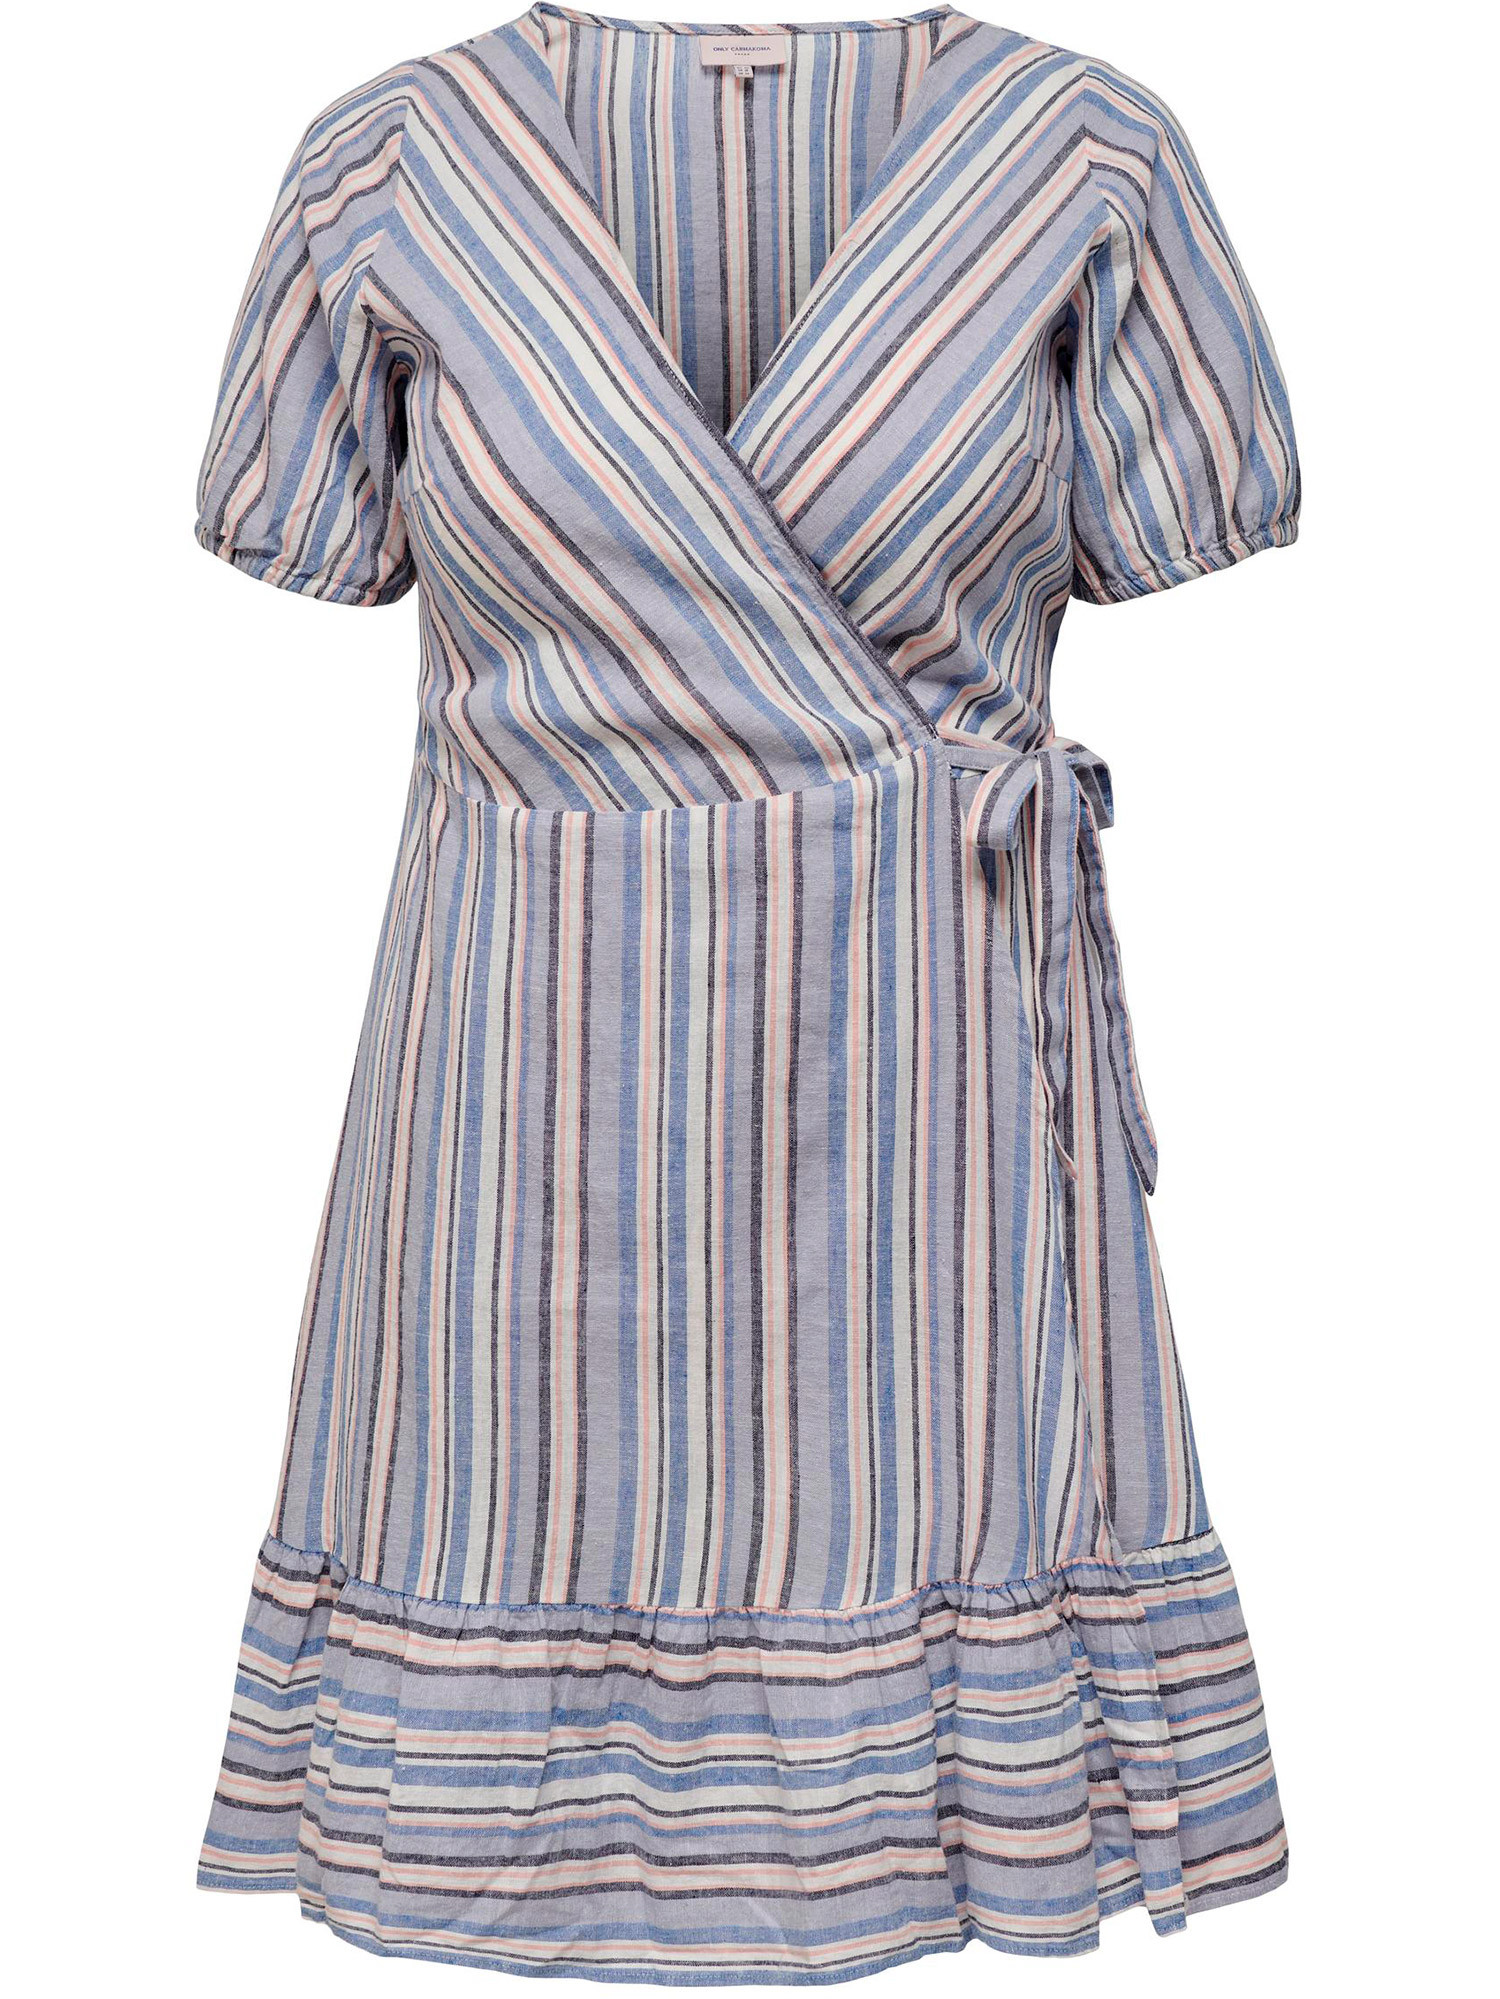 Carally - Søt hvit og blå stripet bomullskjole med volang stropper